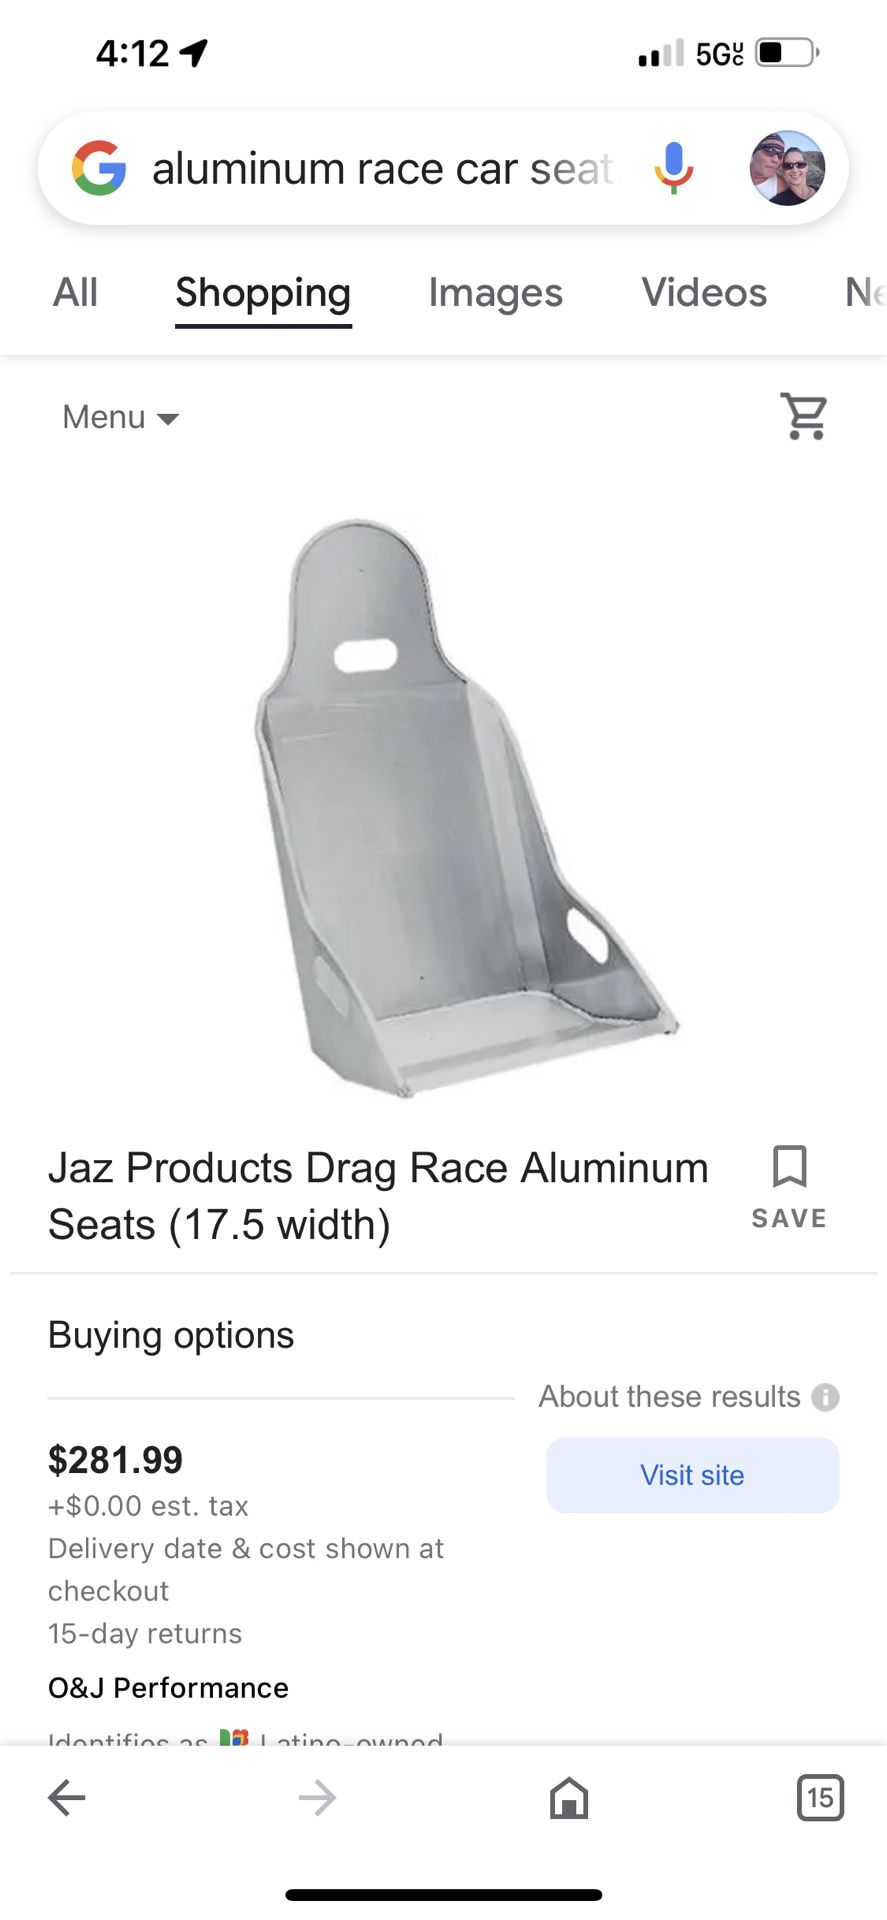 Aluminum race car seat